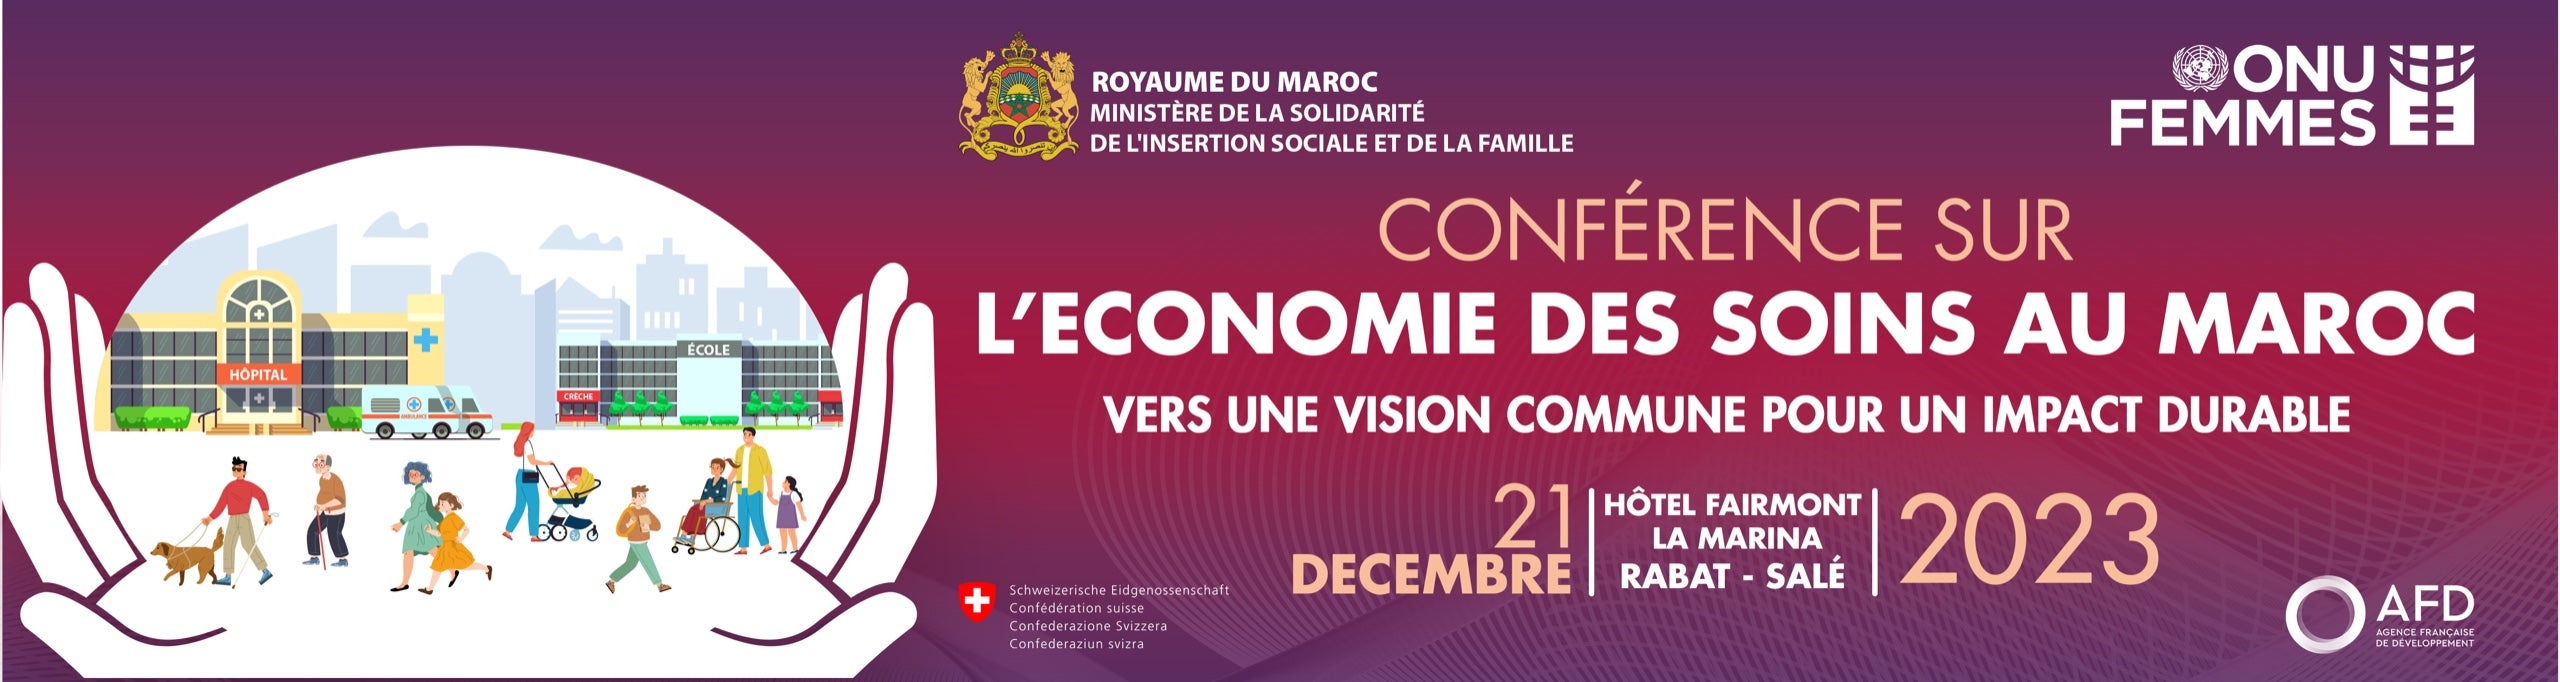 Conférence sur l'Économie des Soins au Maroc 